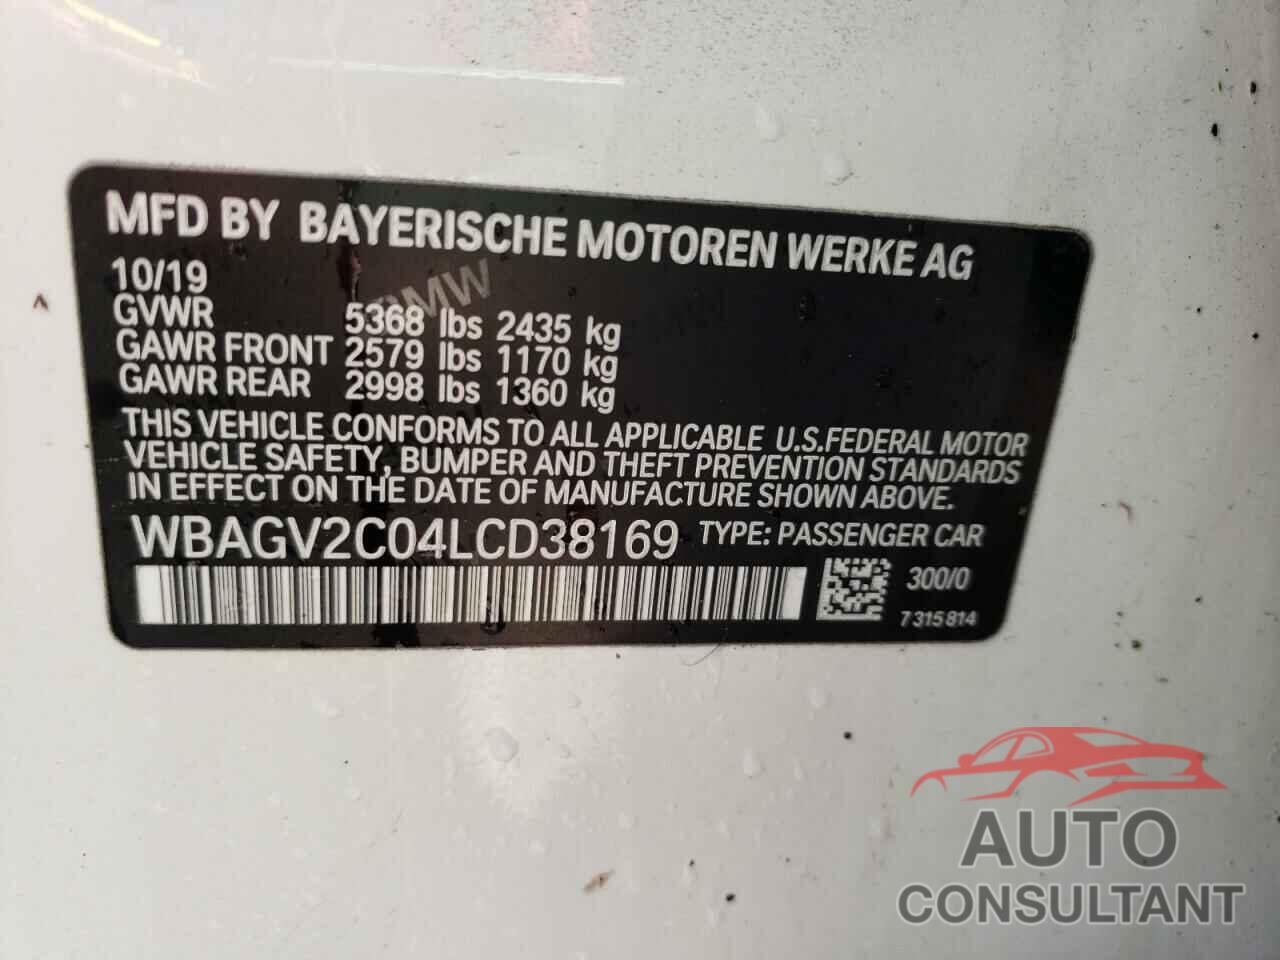 BMW 8 SERIES 2020 - WBAGV2C04LCD38169